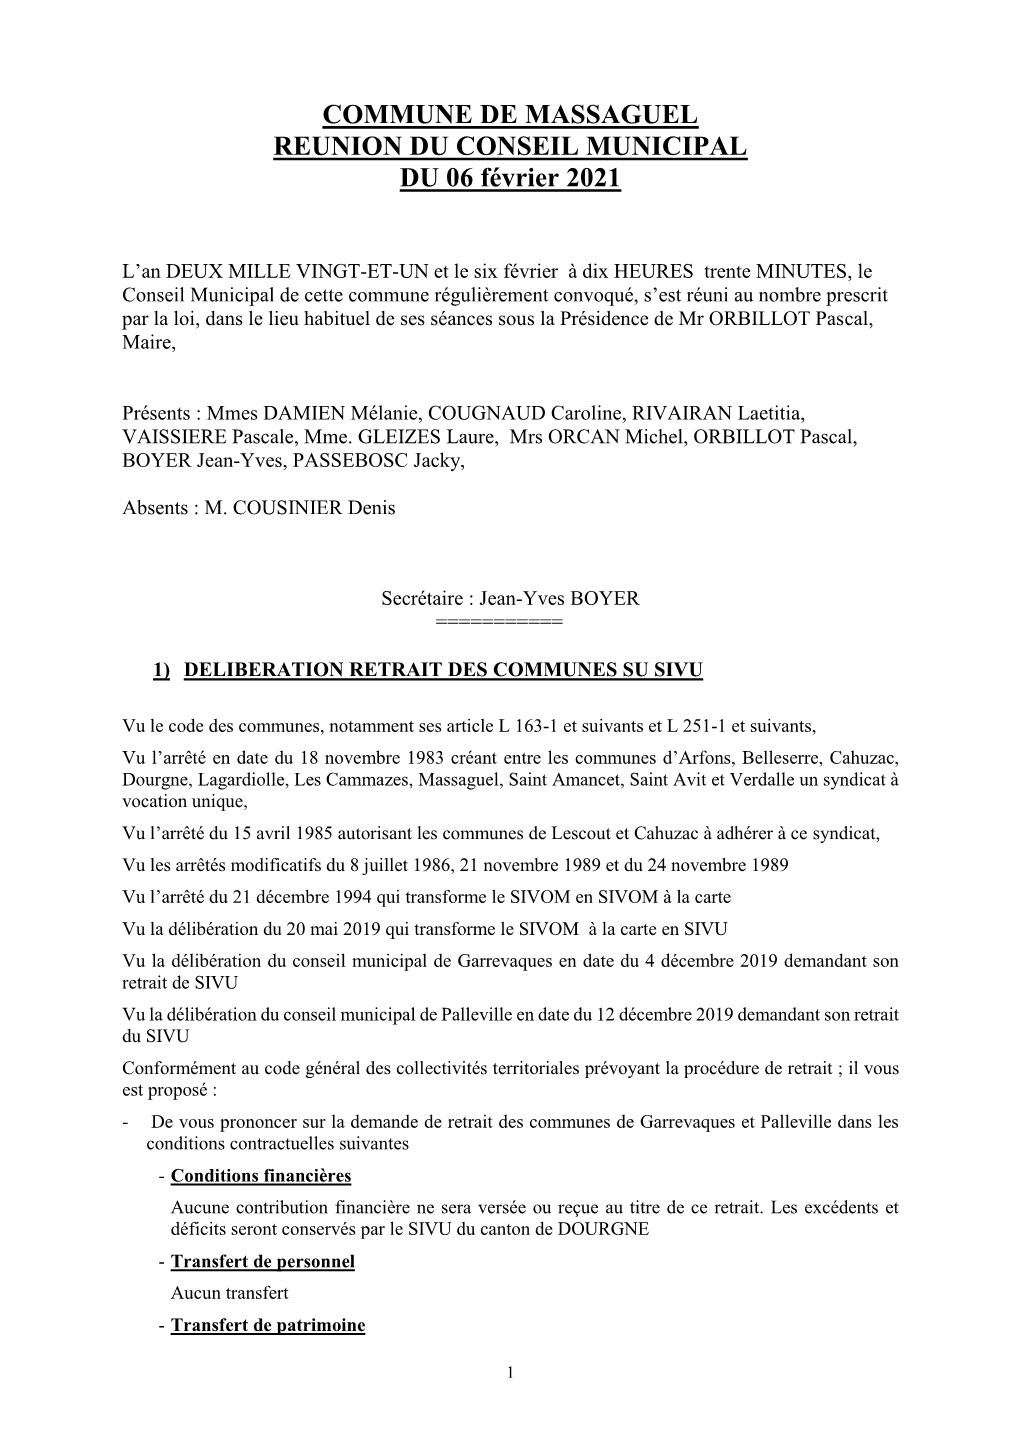 COMMUNE DE MASSAGUEL REUNION DU CONSEIL MUNICIPAL DU 06 Février 2021